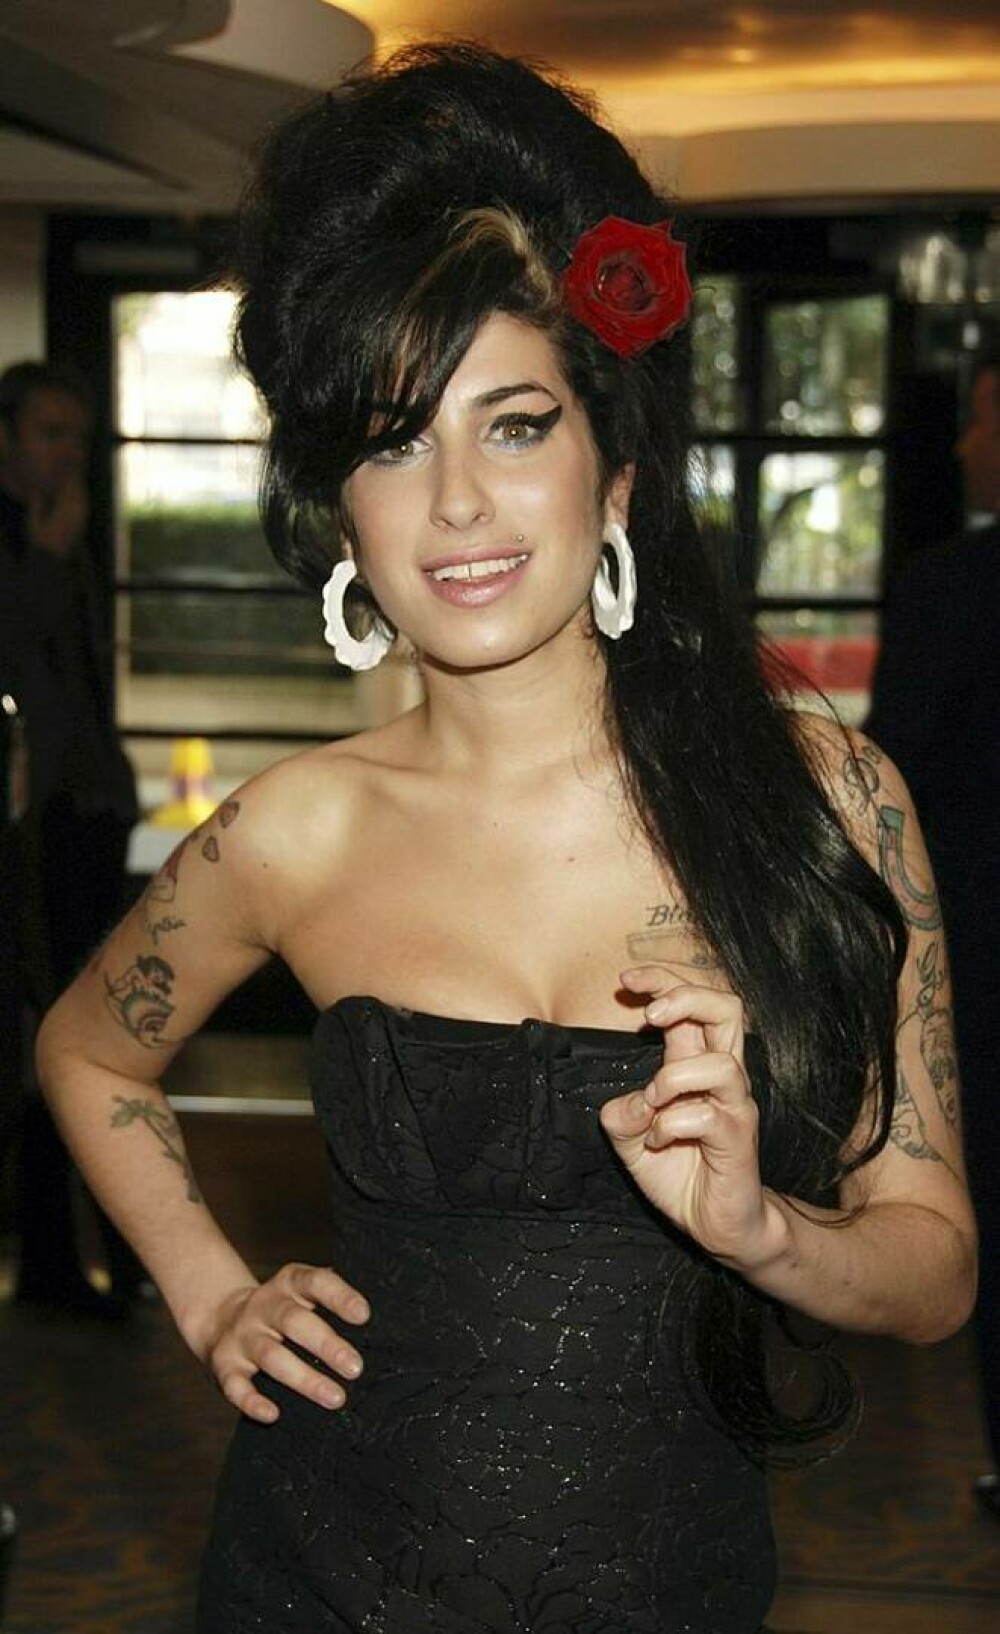 Imagini de colecție cu Amy Winehouse. Cântăreața ar fi împlinit astăzi 40 de ani | FOTO - Imaginea 17